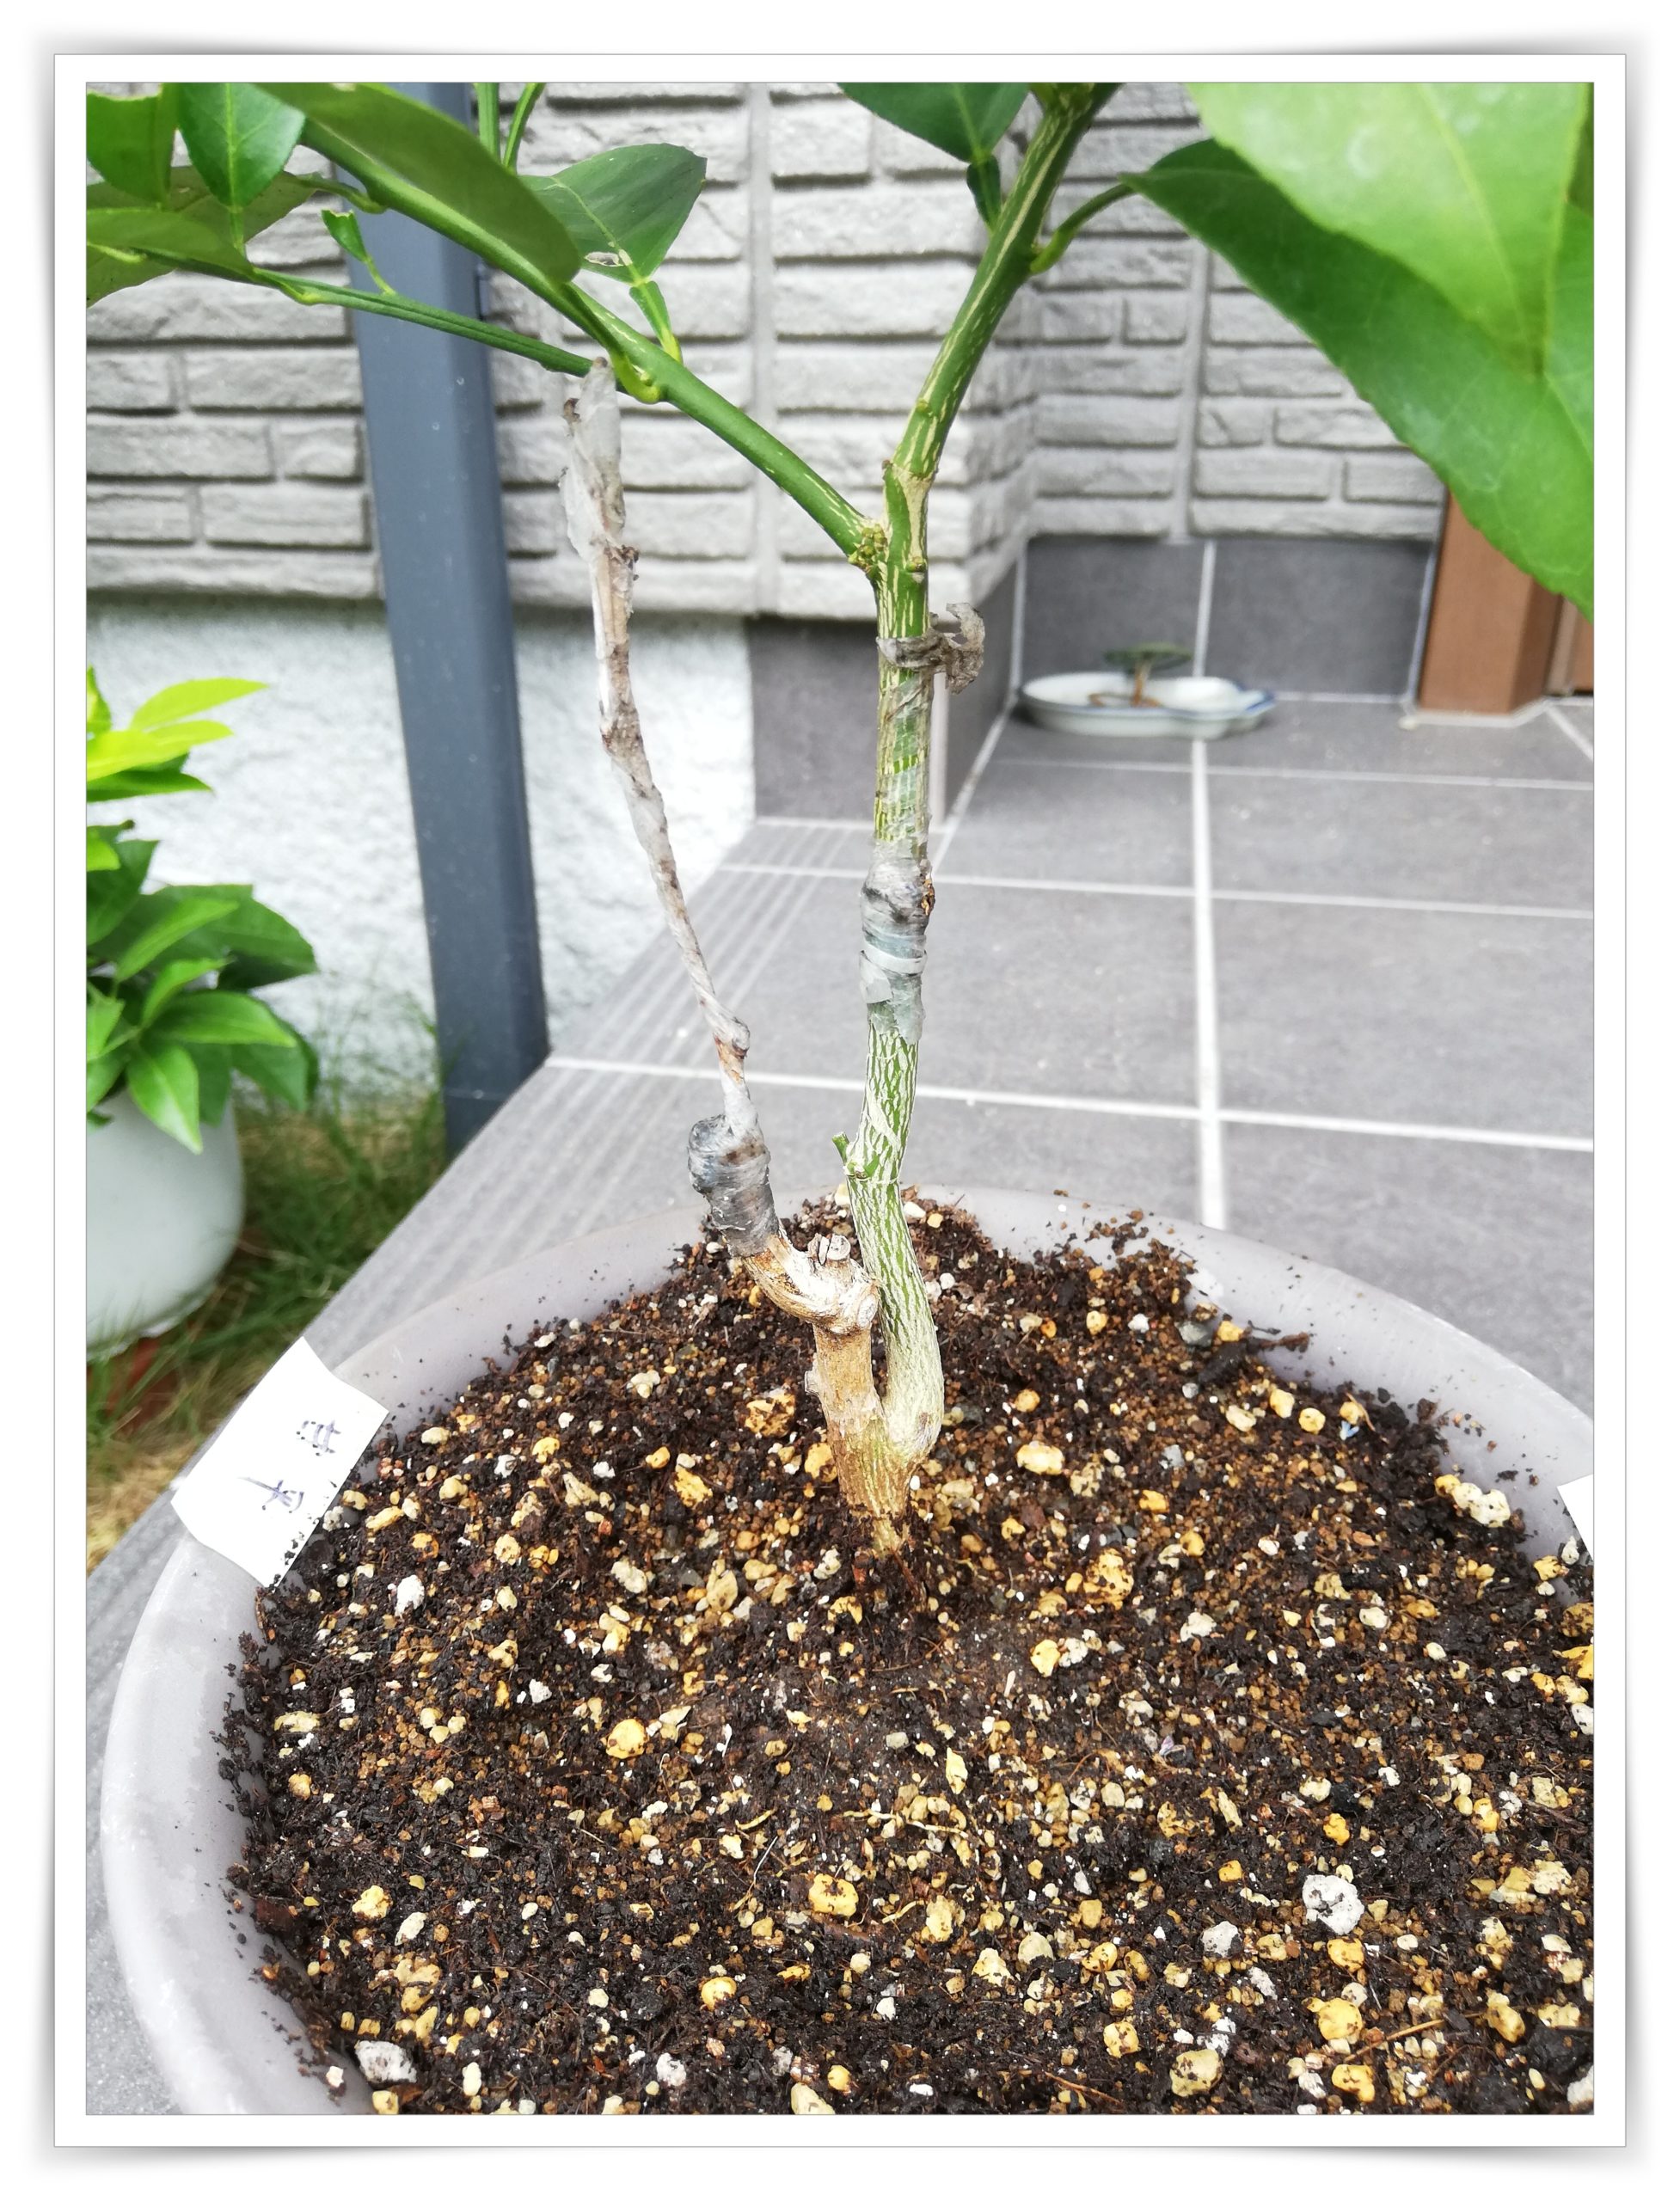 カラタチ台木への接ぎ木の結果 - korolemonのブログ レモンを育ててみ 